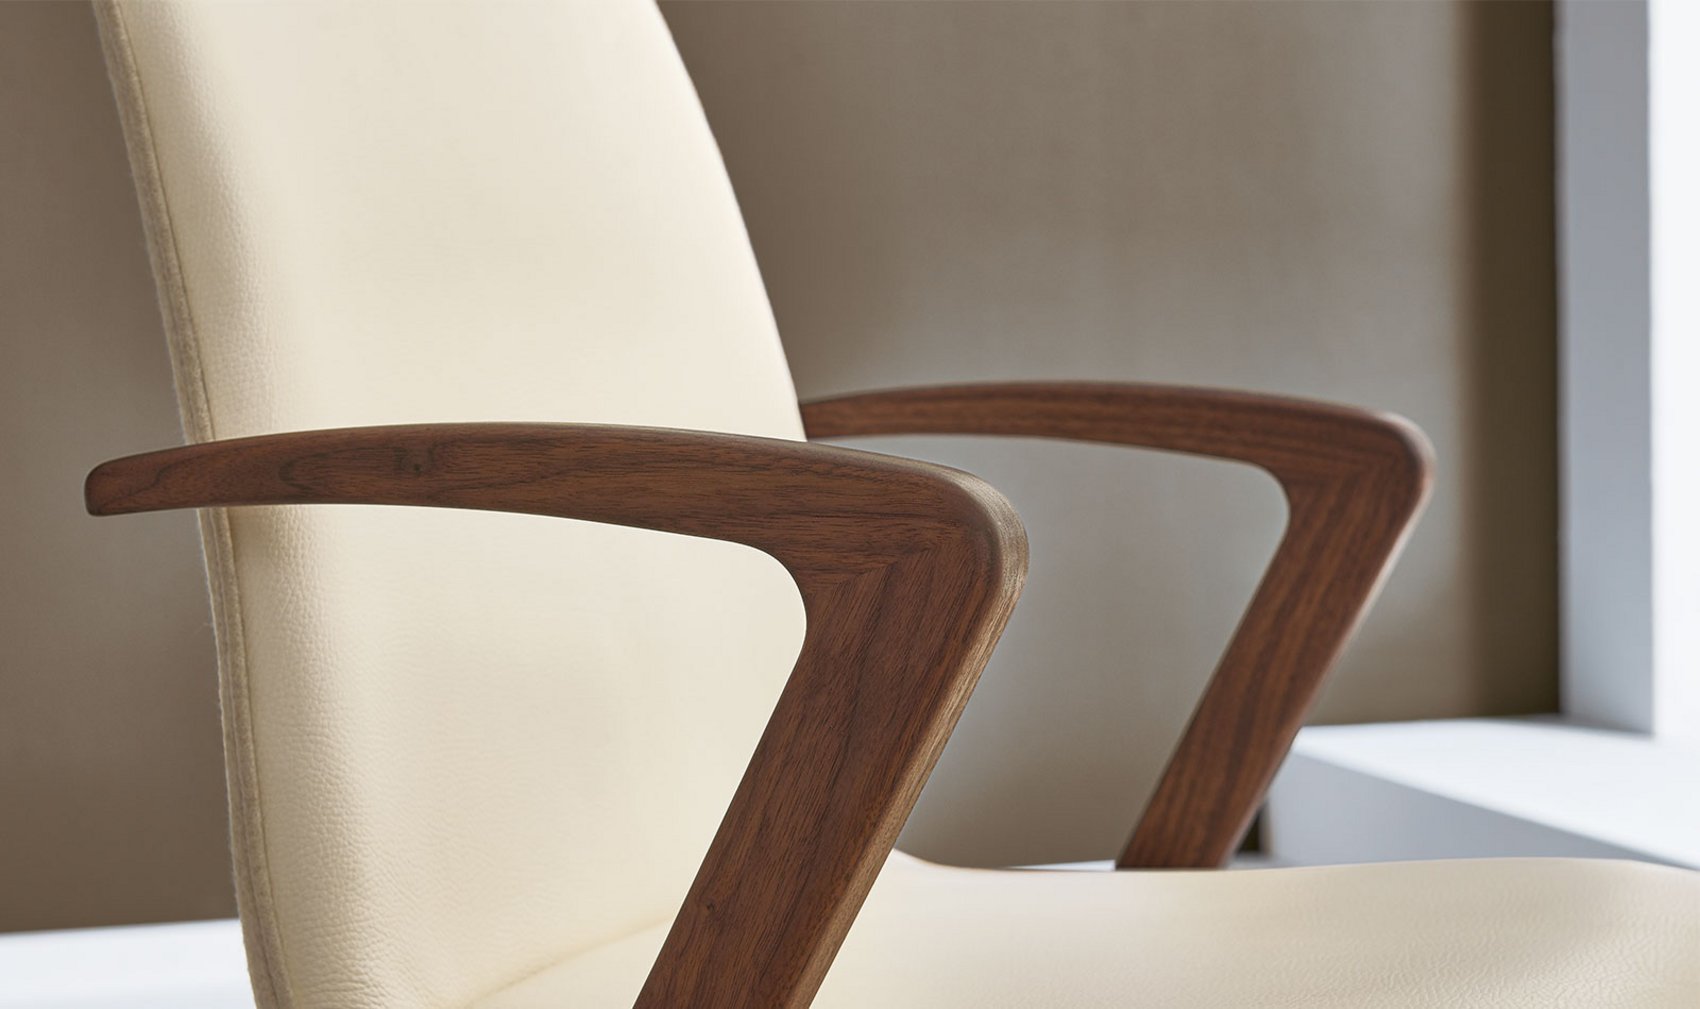 Esszimmer - Stühle / Sessel - Sessel Kate - Venjakob Möbel - Vorsprung  durch Design und Qualität